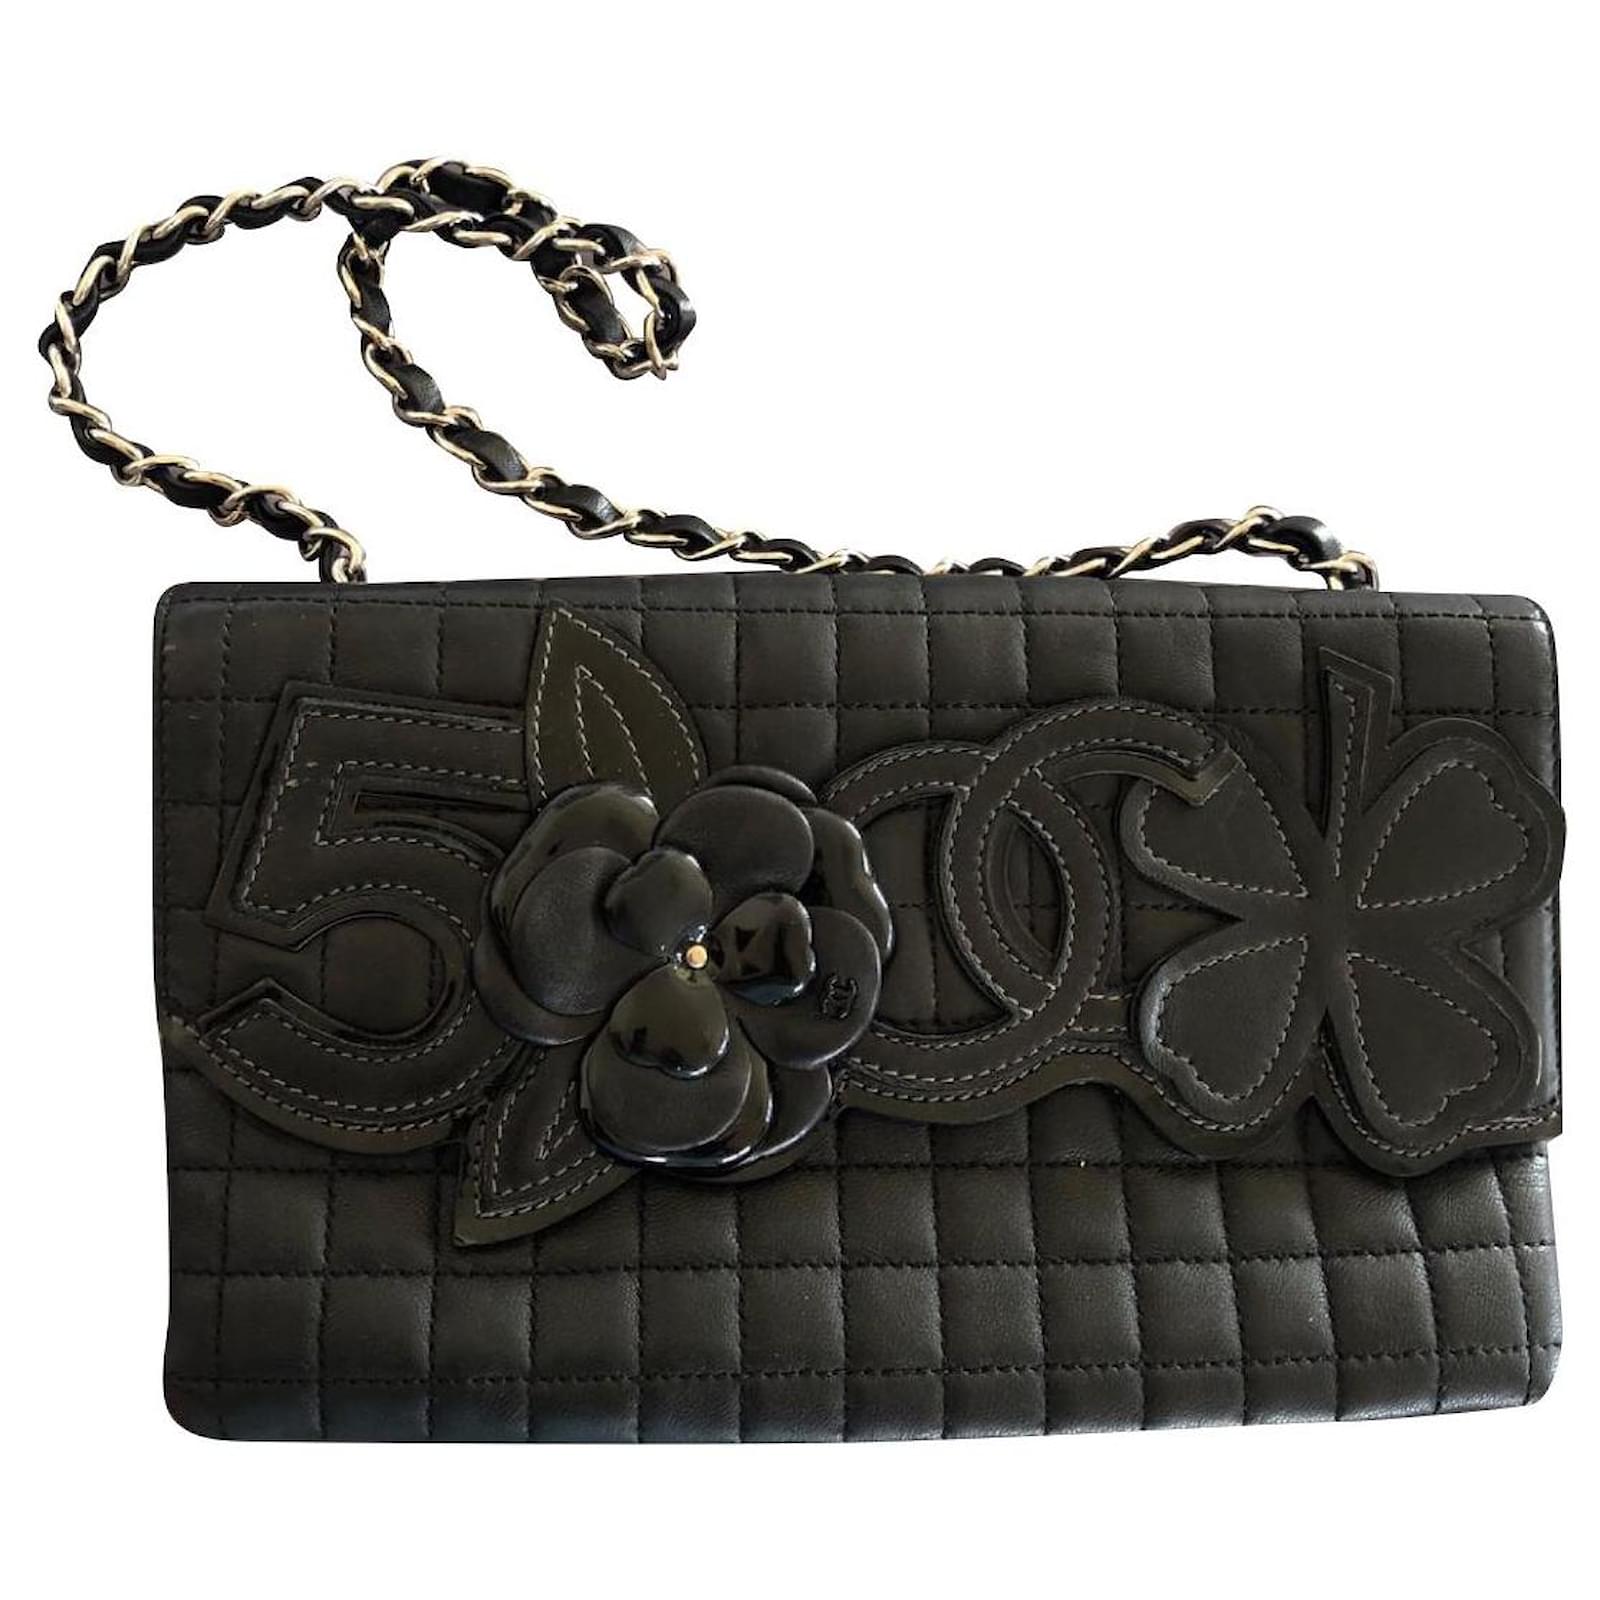 Chanel camellia number 5 flap bag